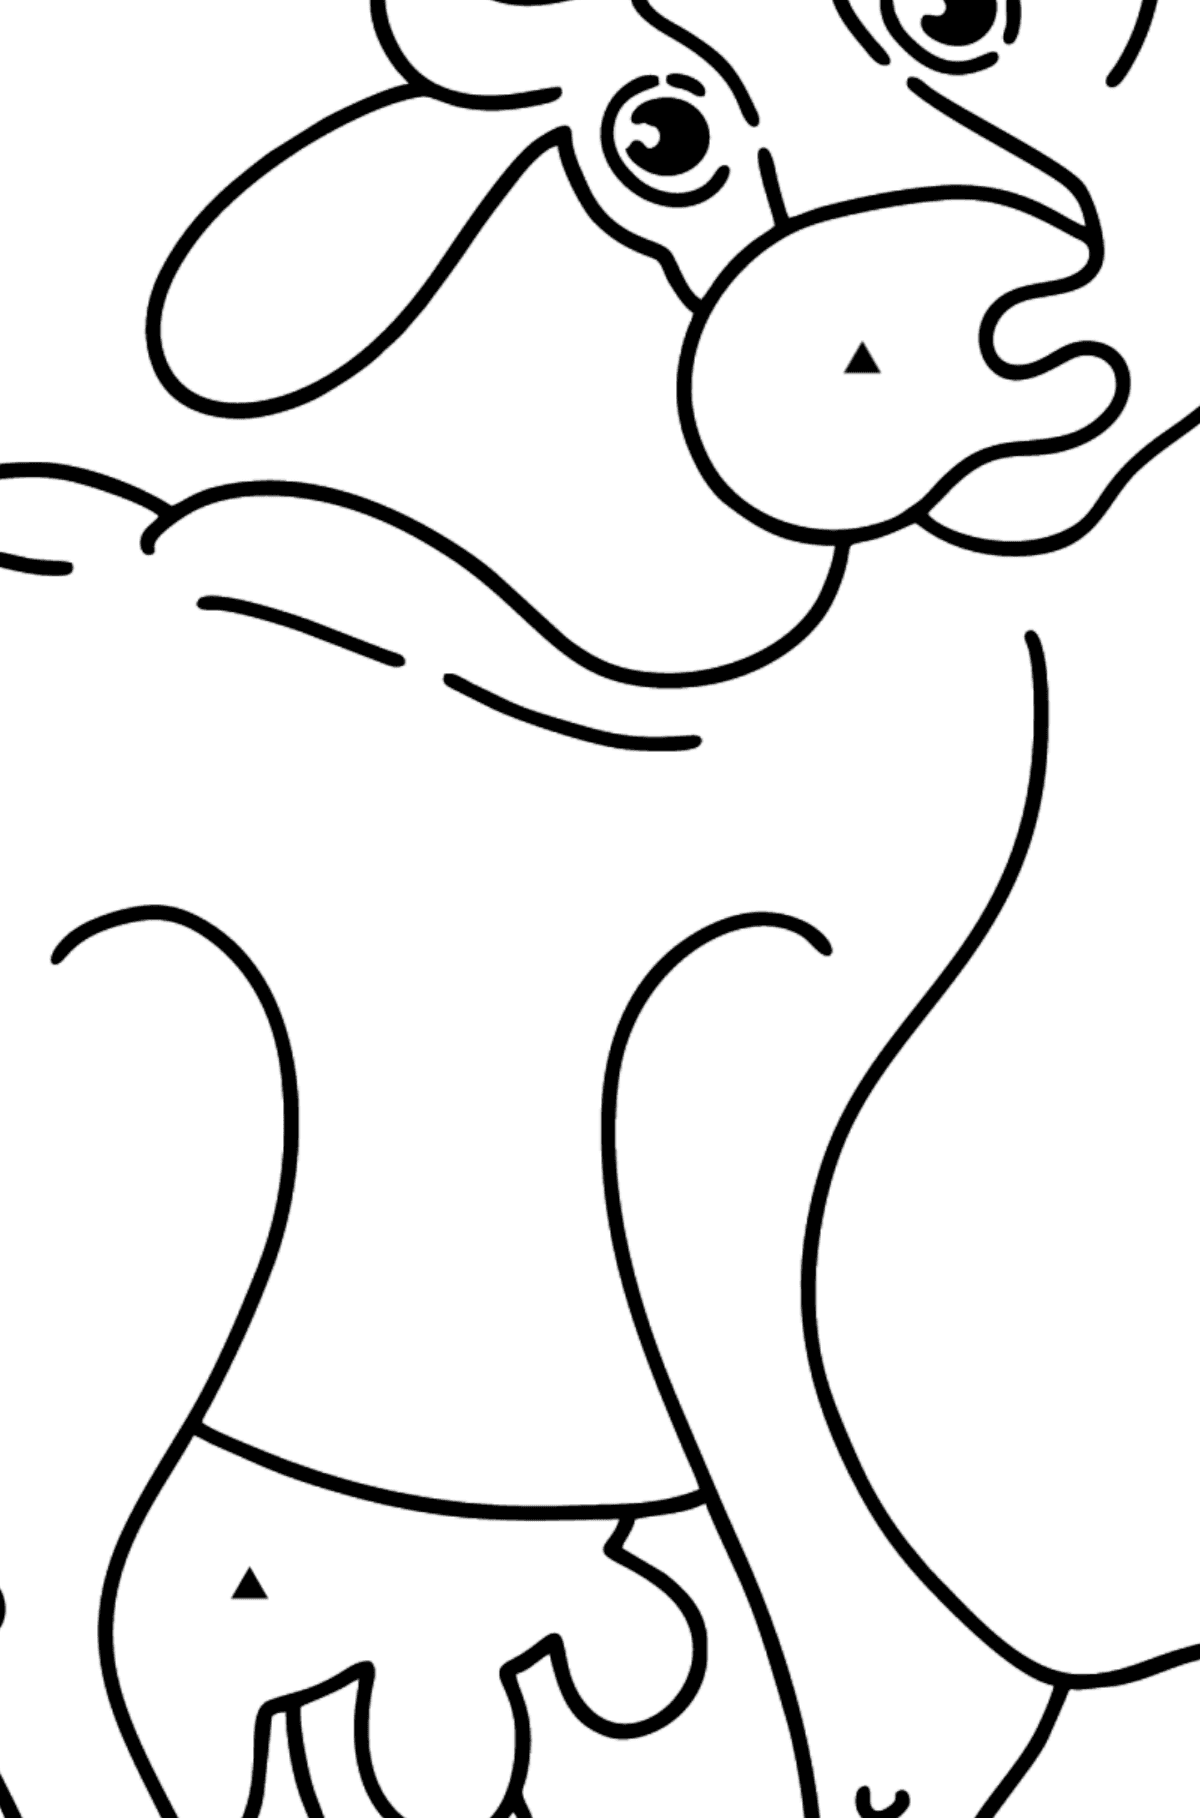 Dibujo de vaca para colorear - Colorear por Símbolos para Niños